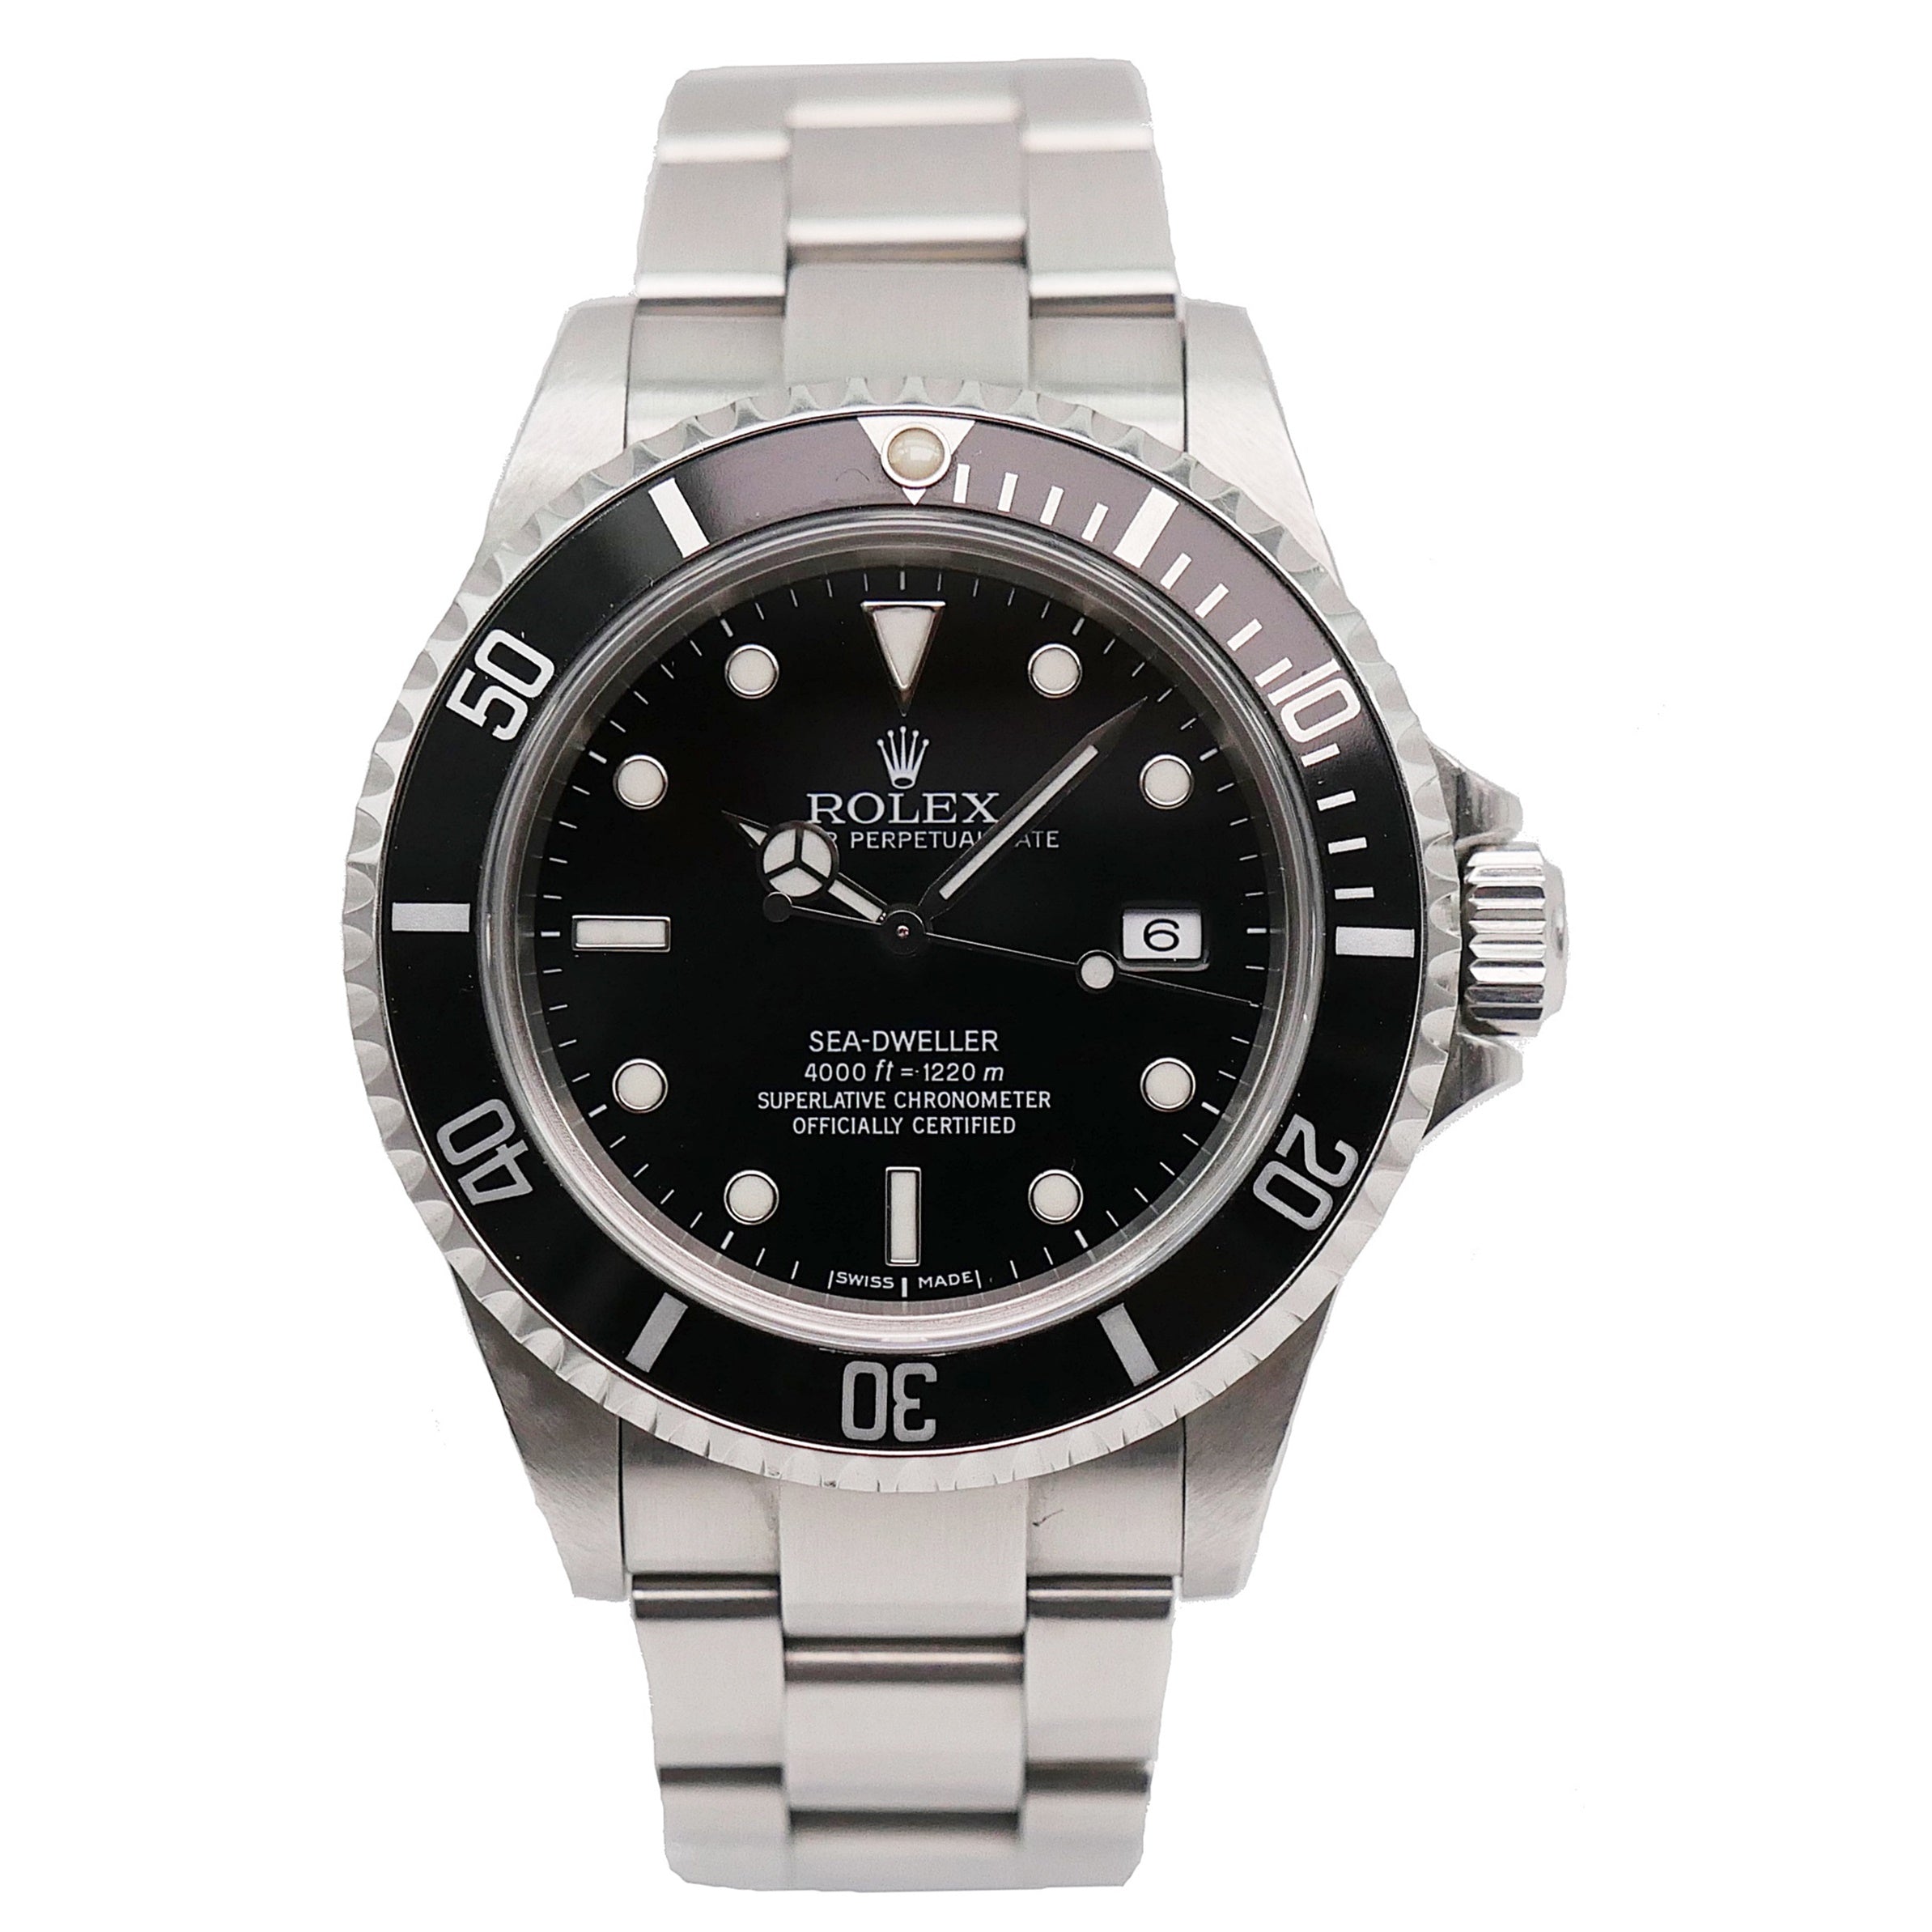 Rolex Sea-Dweller Stahl 16600 - 1999